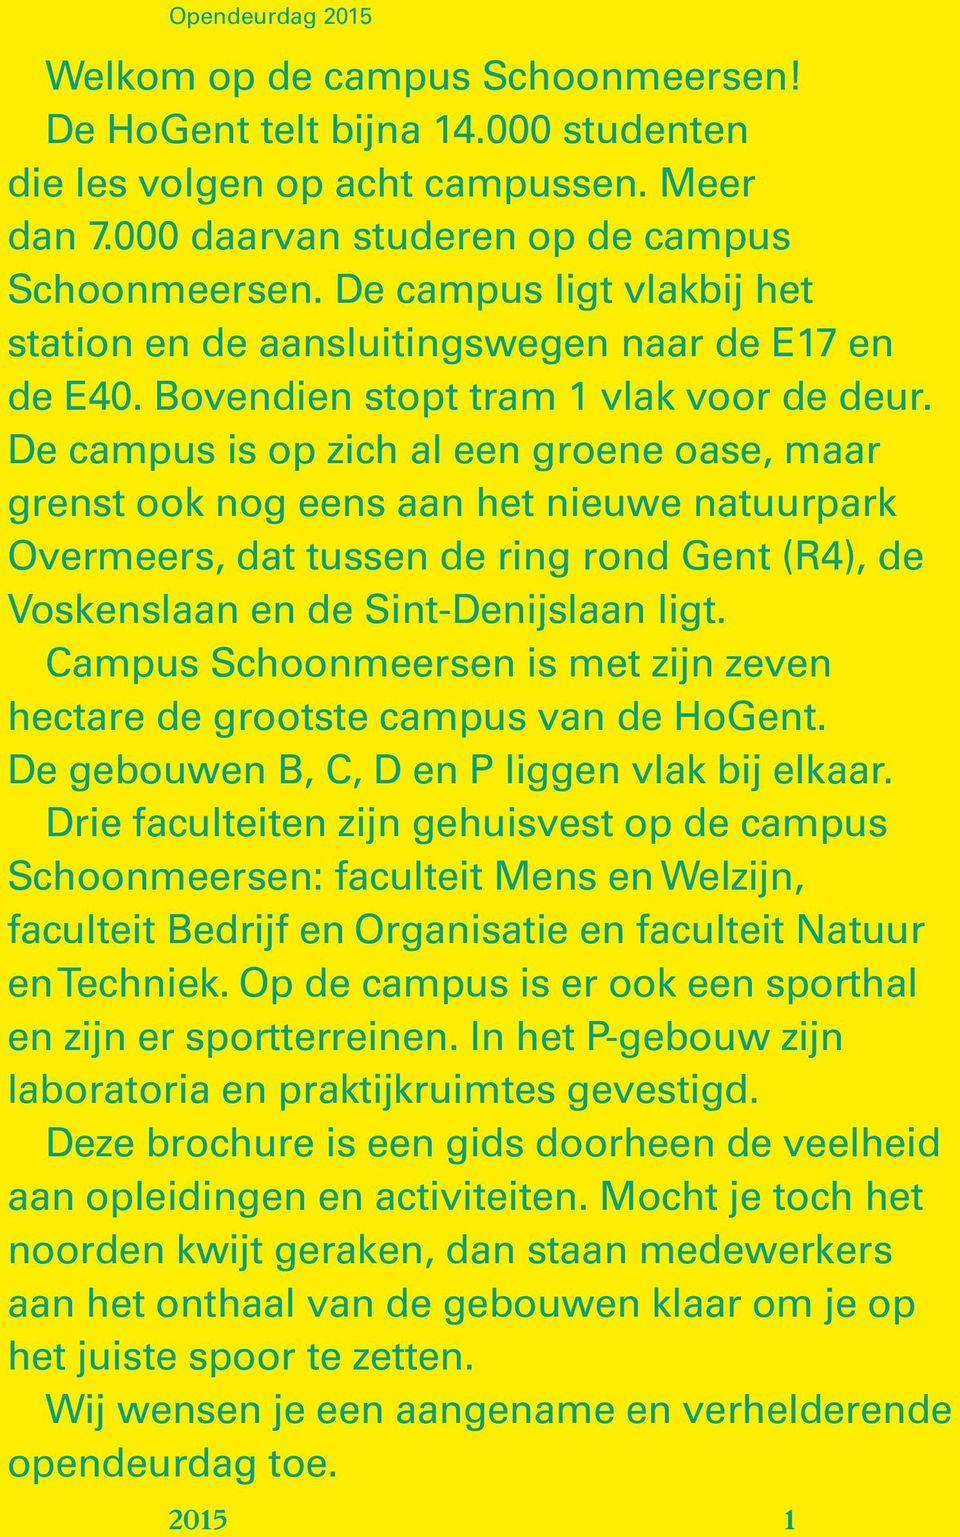 De campus is op zich al een groene oase, maar grenst ook nog eens aan het nieuwe natuurpark Overmeers, dat tussen de ring rond Gent (R4), de Voskenslaan en de Sint-Denijslaan ligt.